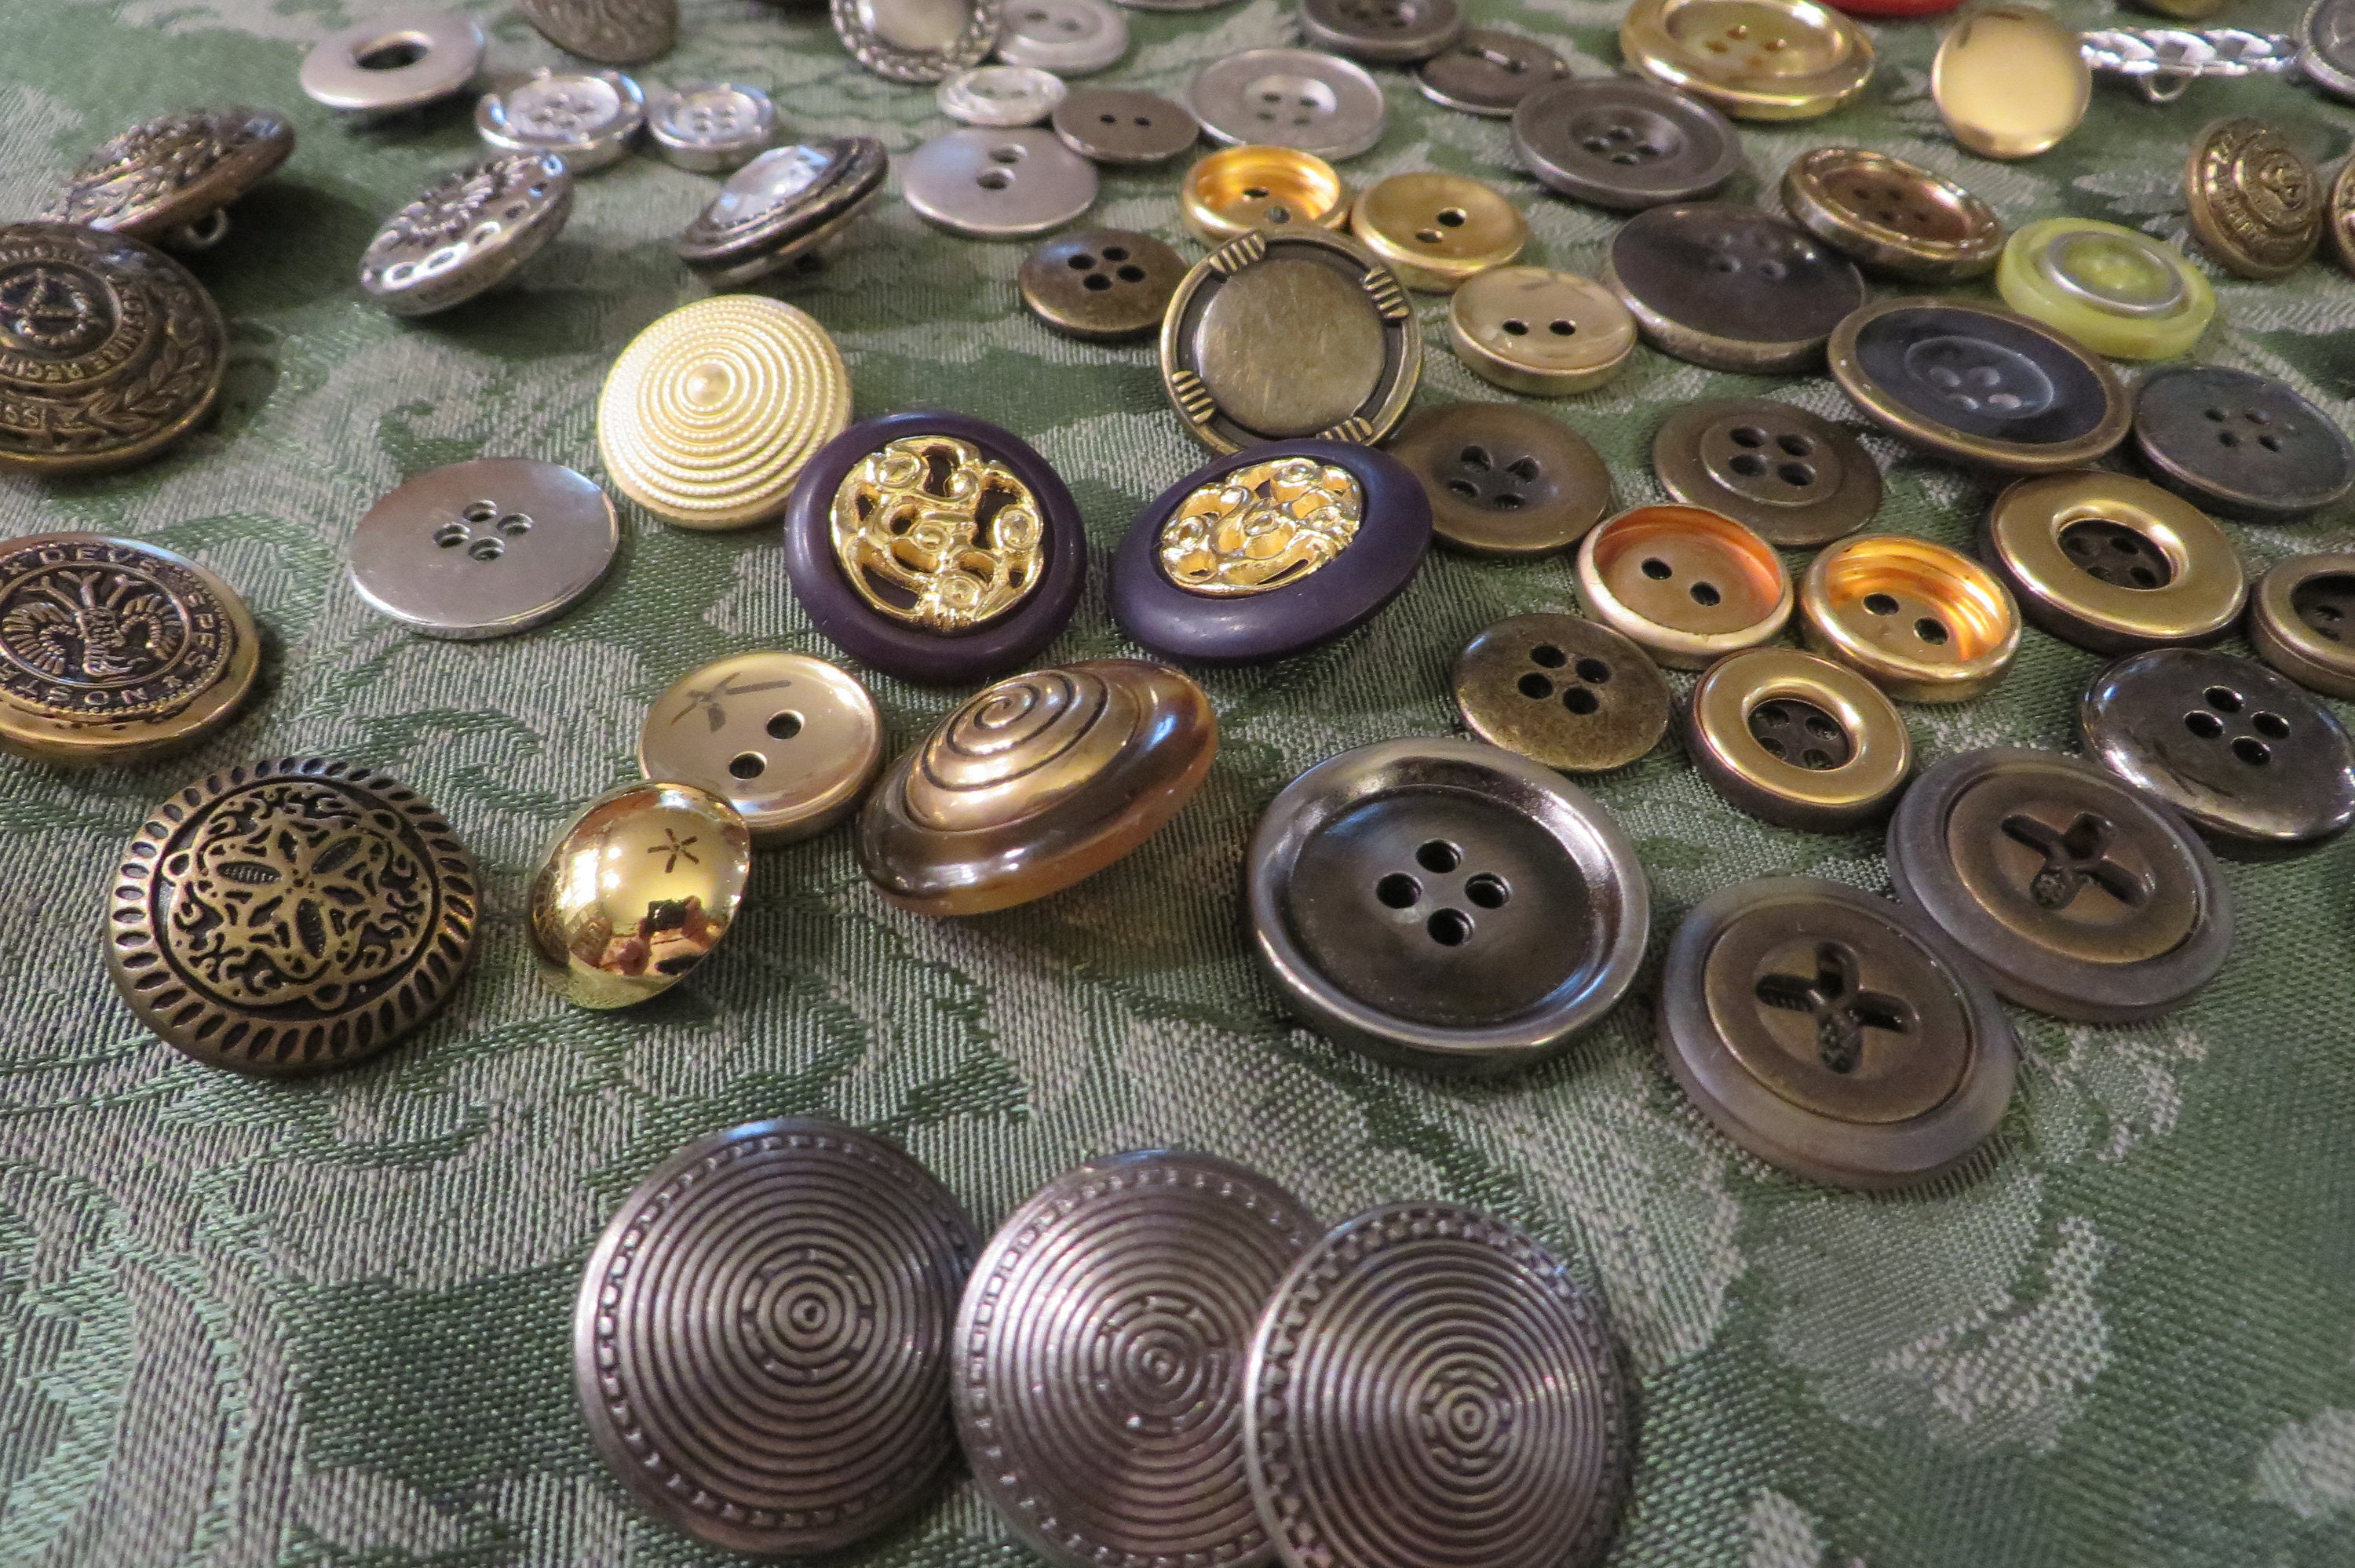 Wholesale 100sets/lot 15mm #484/831 four part brass metal button